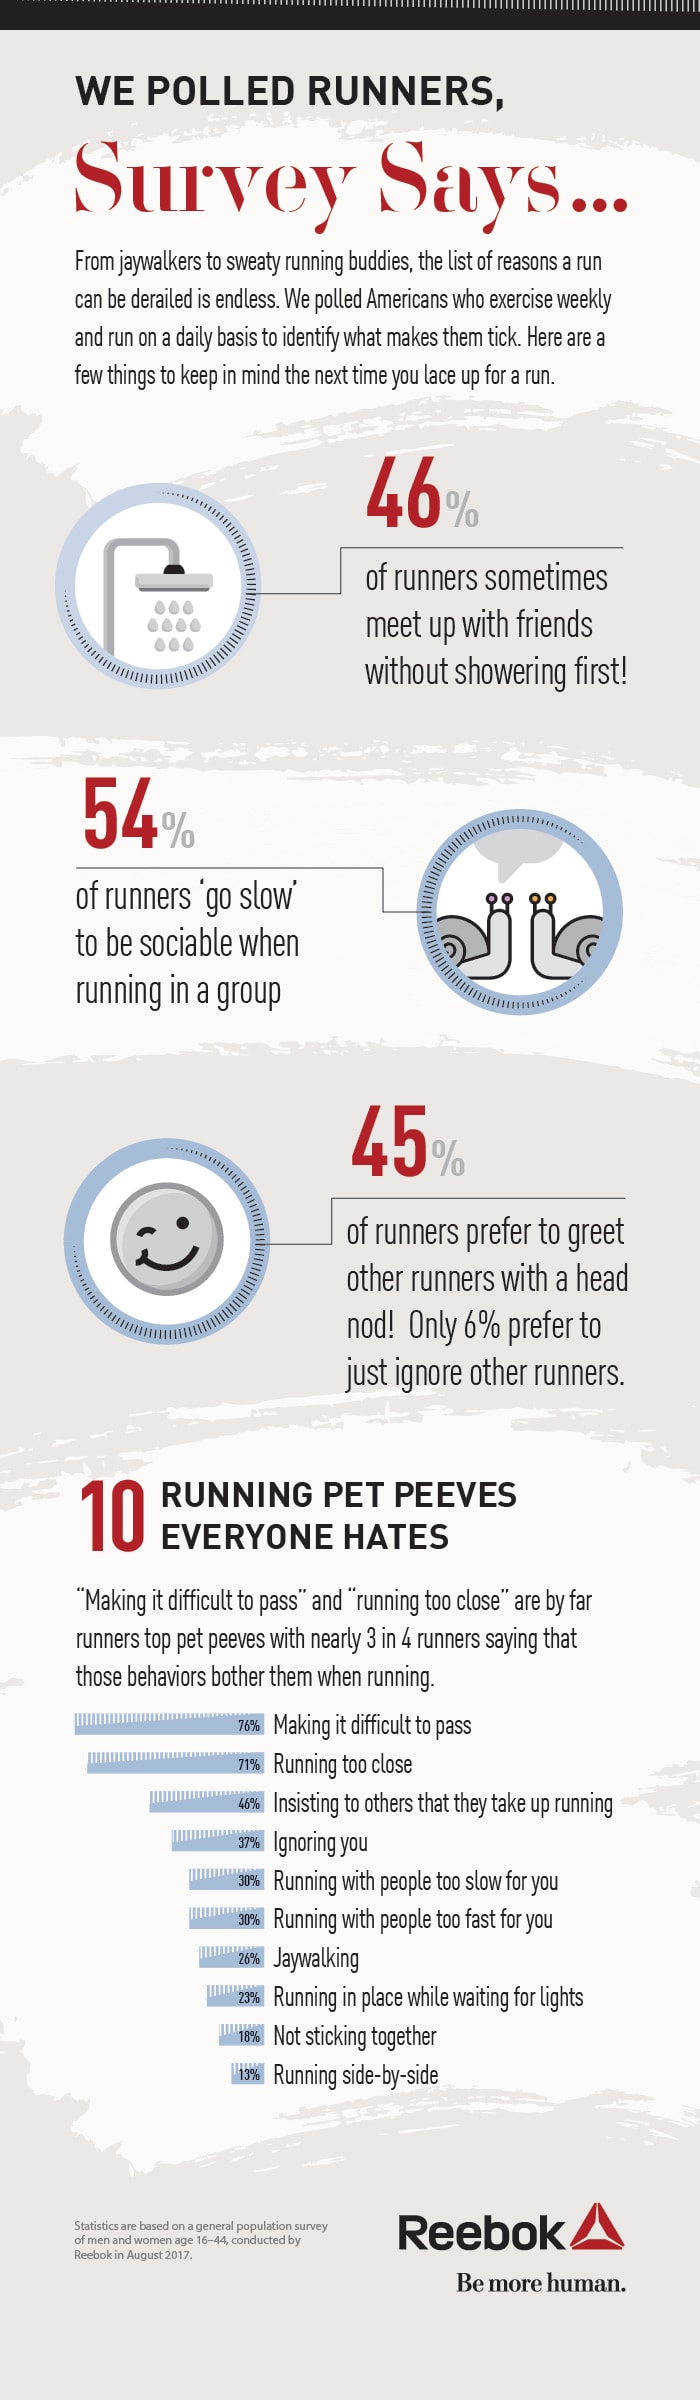 running-etiquette-infographic